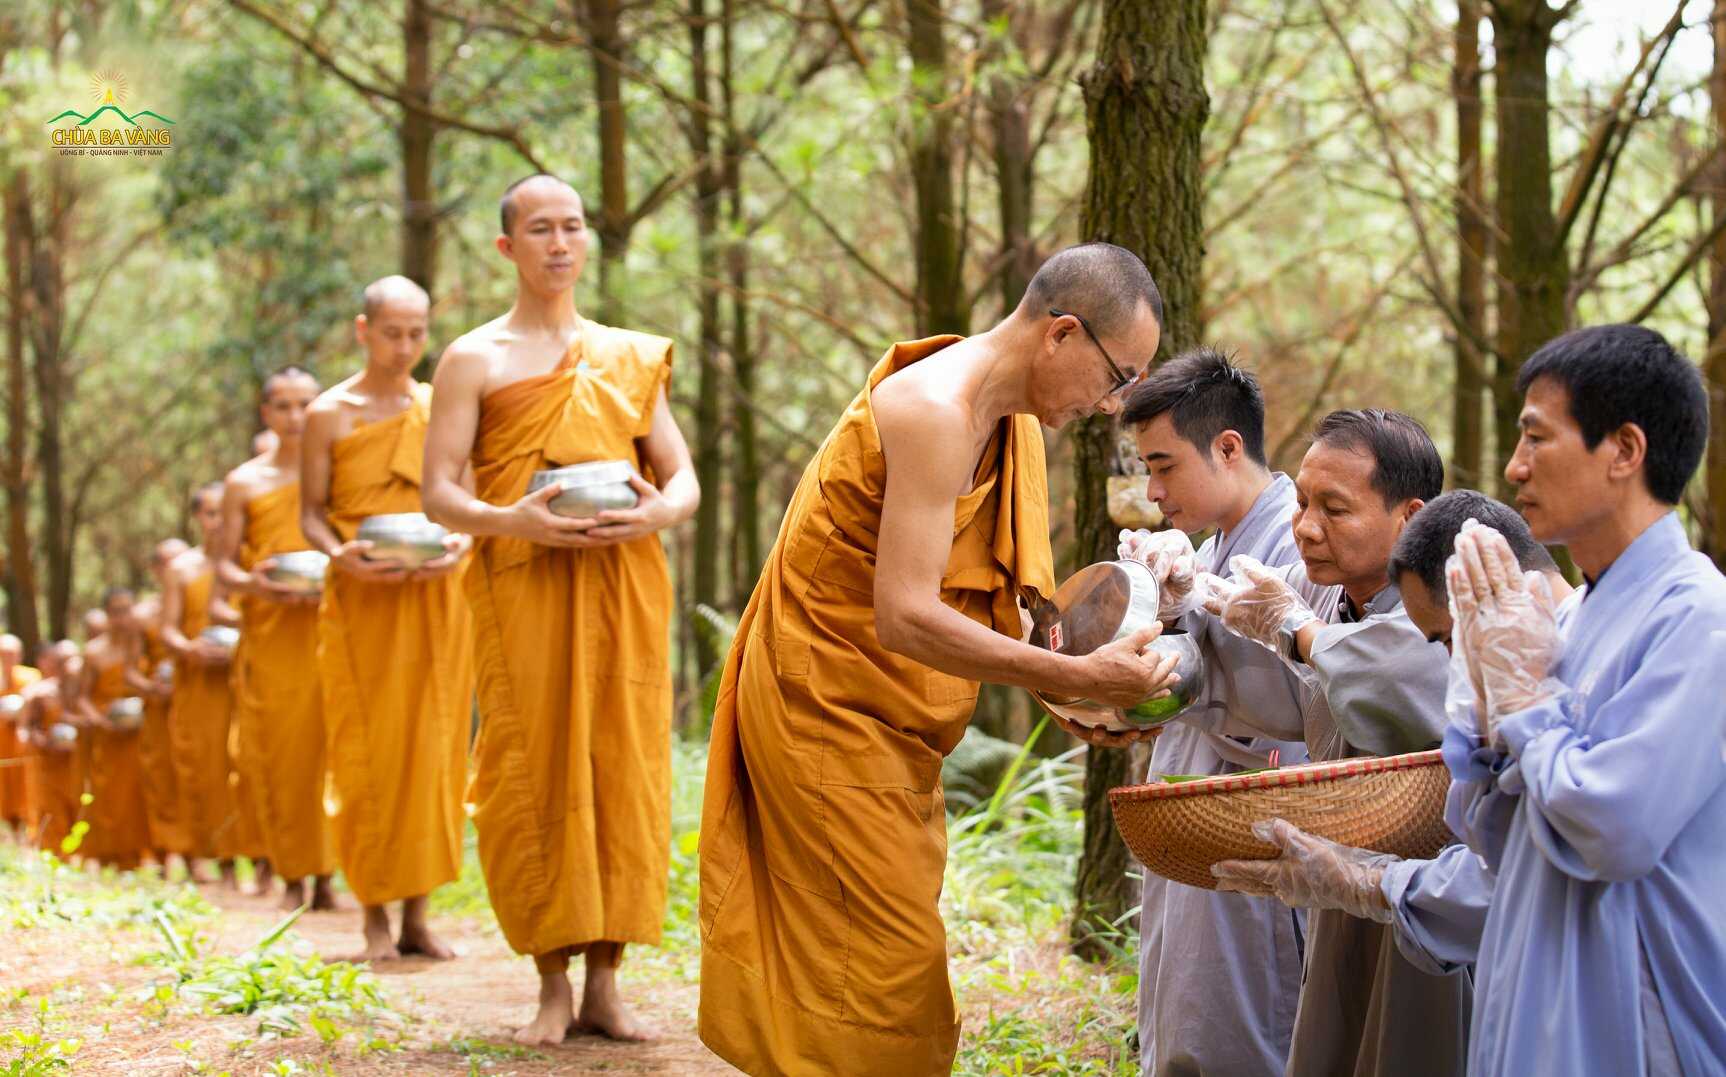 Phật tử cúng dường Tăng đoàn báo đền Tứ trọng ân - Ân quốc gia, nguyện cầu đất nước thái hòa, bình an